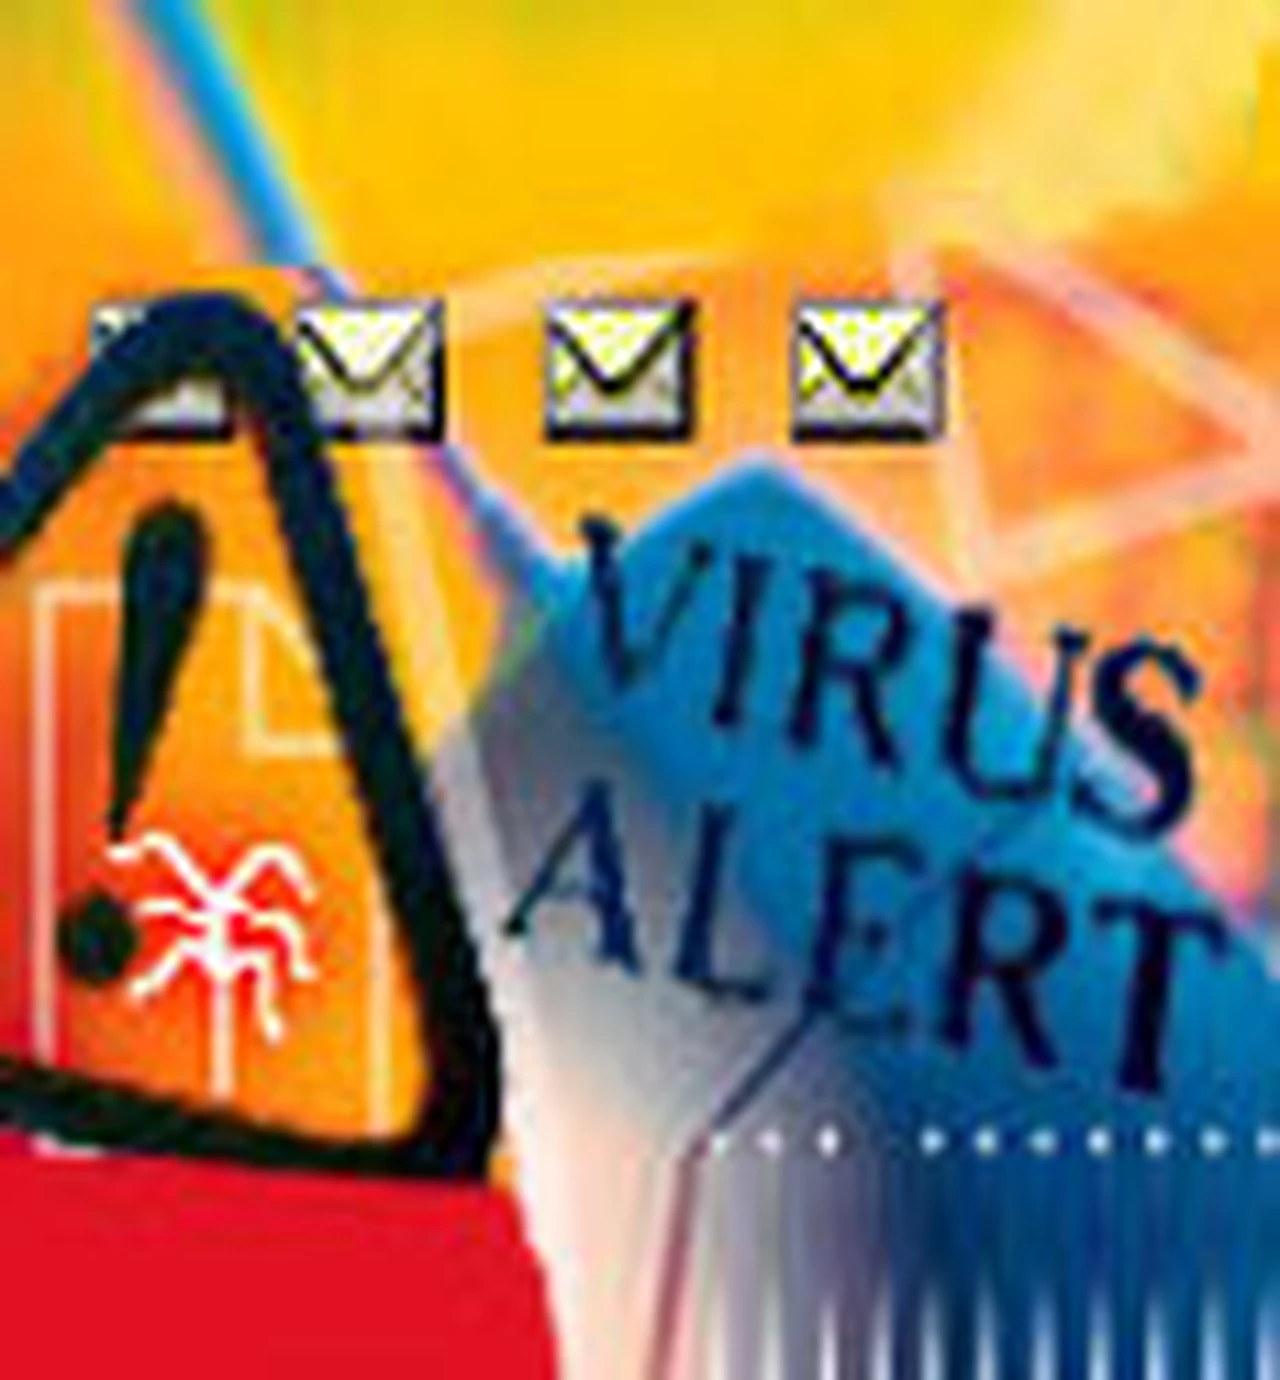 Una variante del virus Storm Worm inunda correos electrónicos